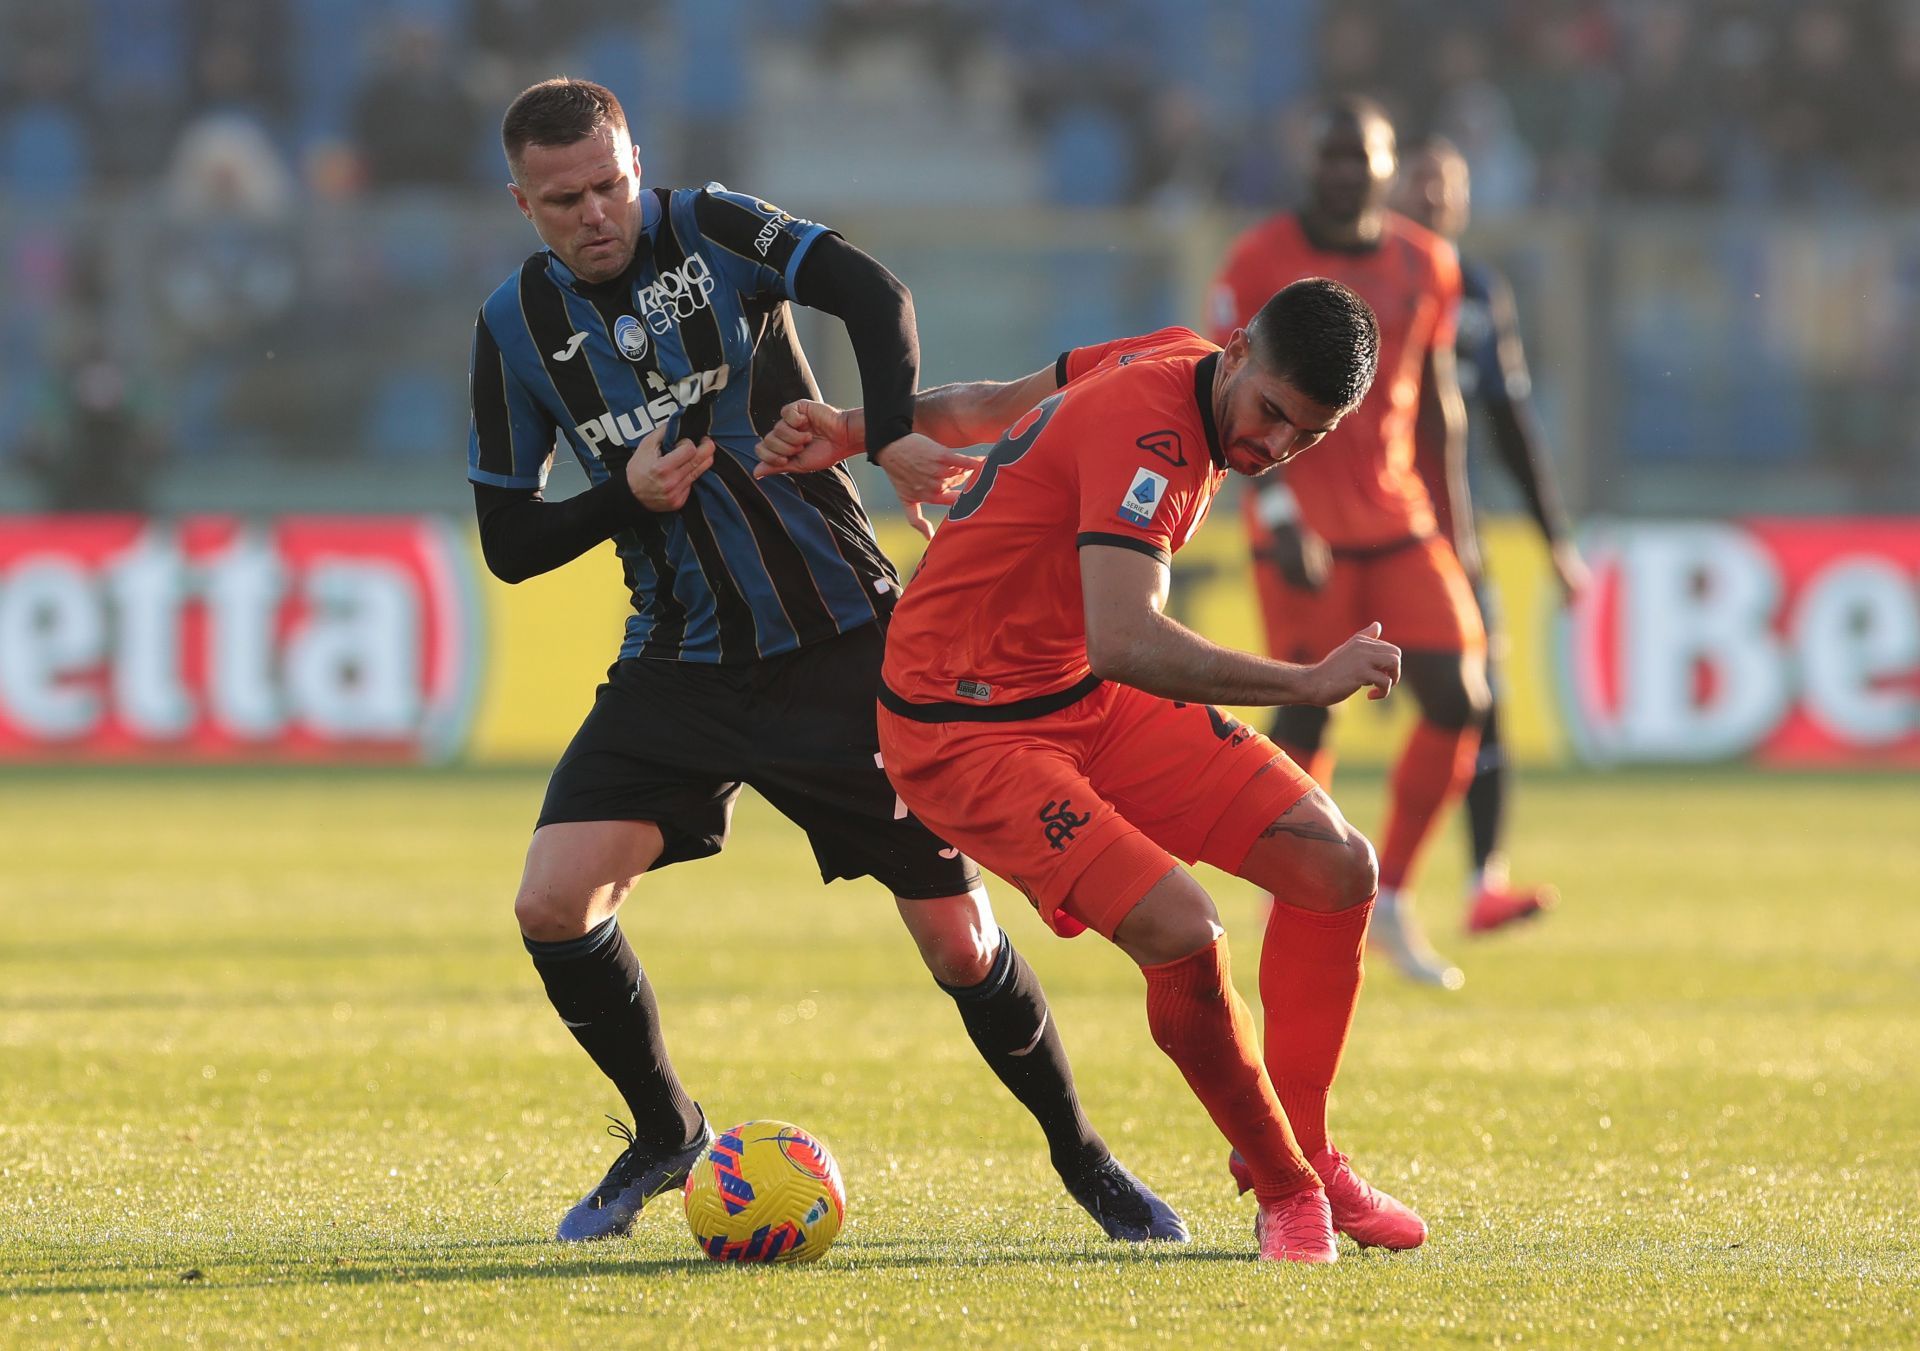 Spezia play host to Atalanta on Sunday